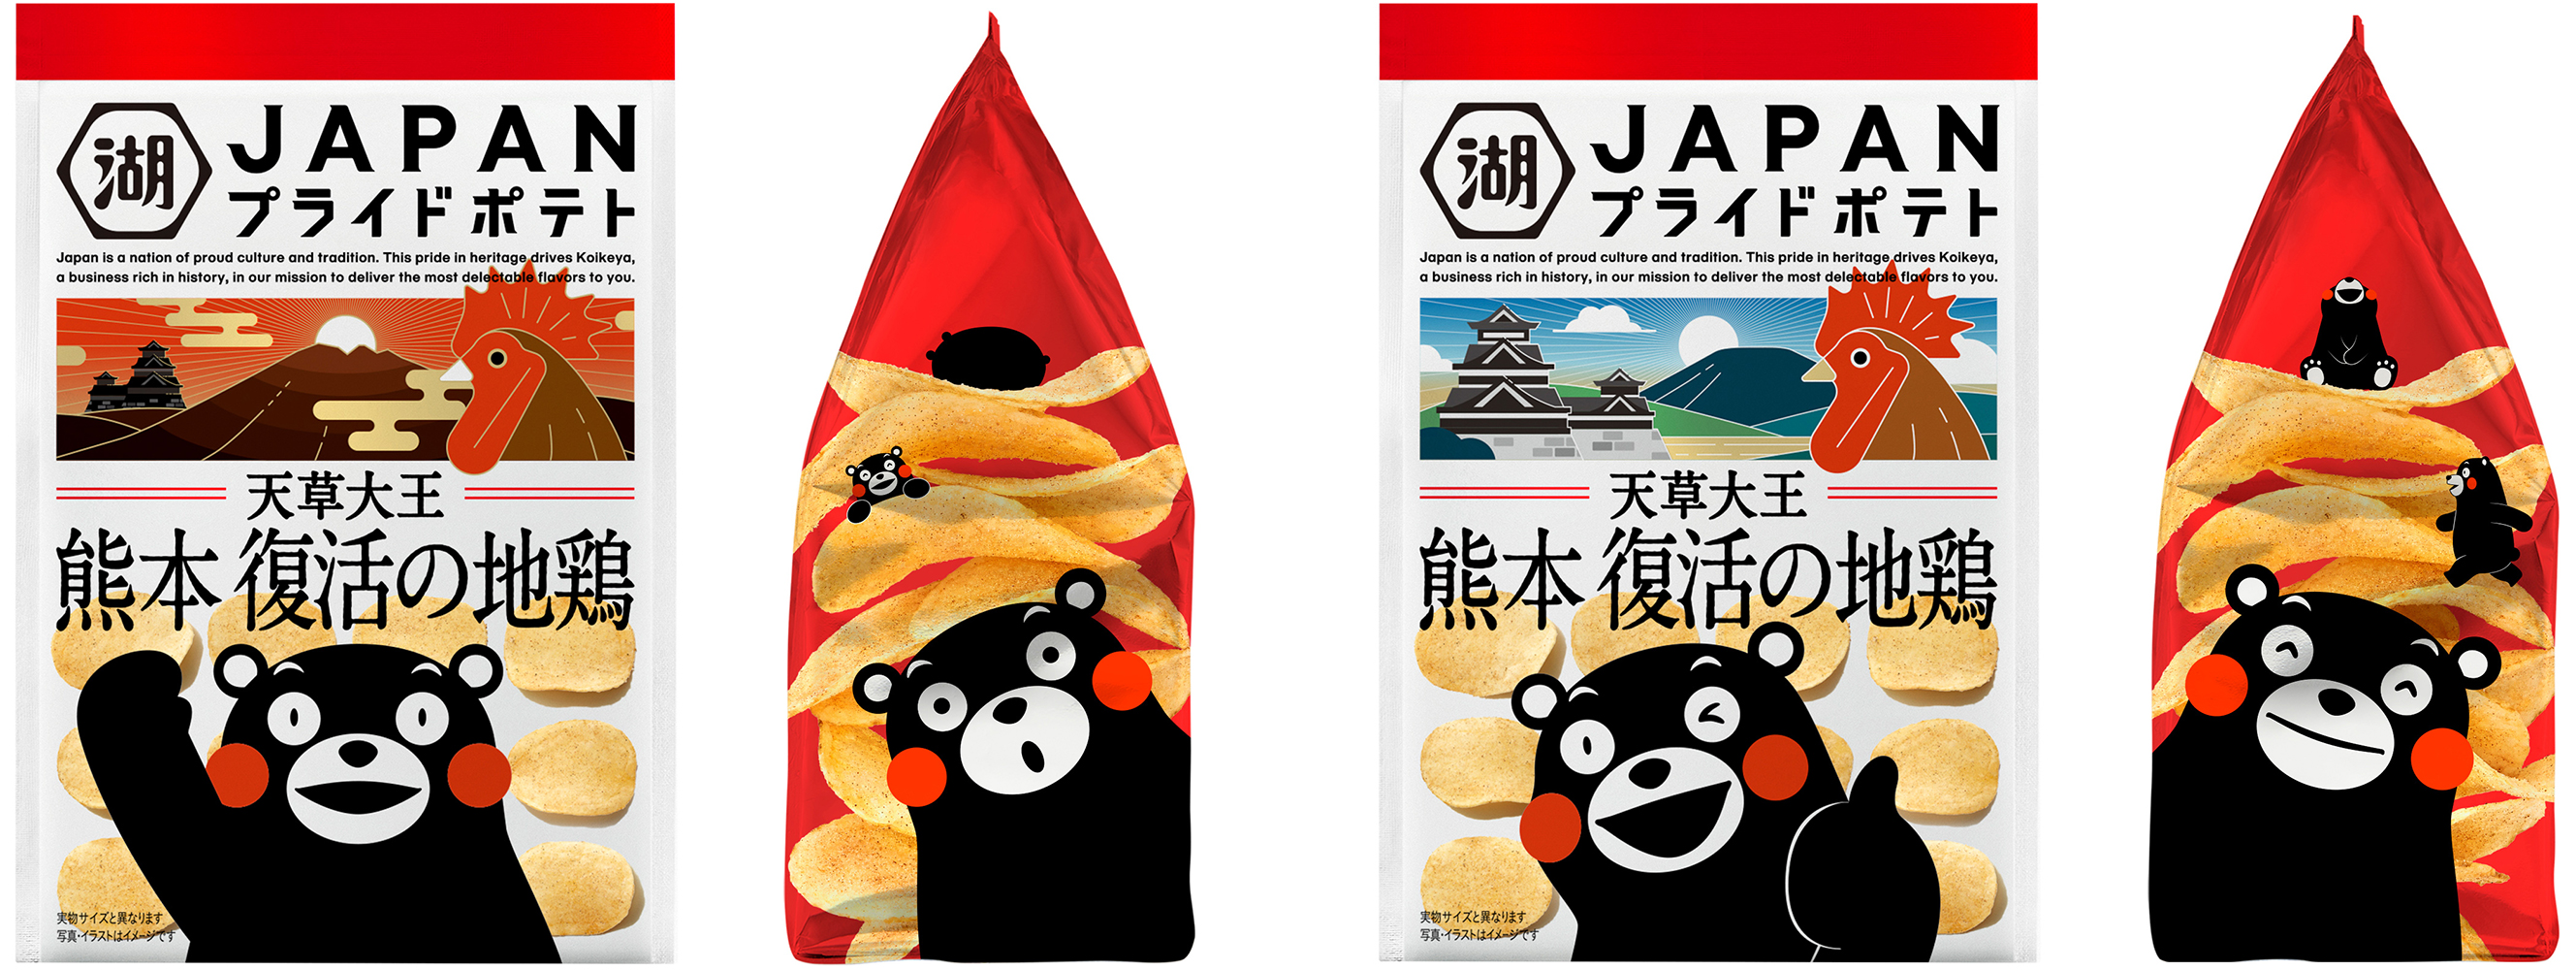 １リツイートにつき１円を寄付　「ＪＡＰＡＮプライドポテト 熊本」発売記念　もーっと！よか熊本へ！あなたの1リツイートで熊本を応援しよう！キャンペーンを実施のサブ画像2